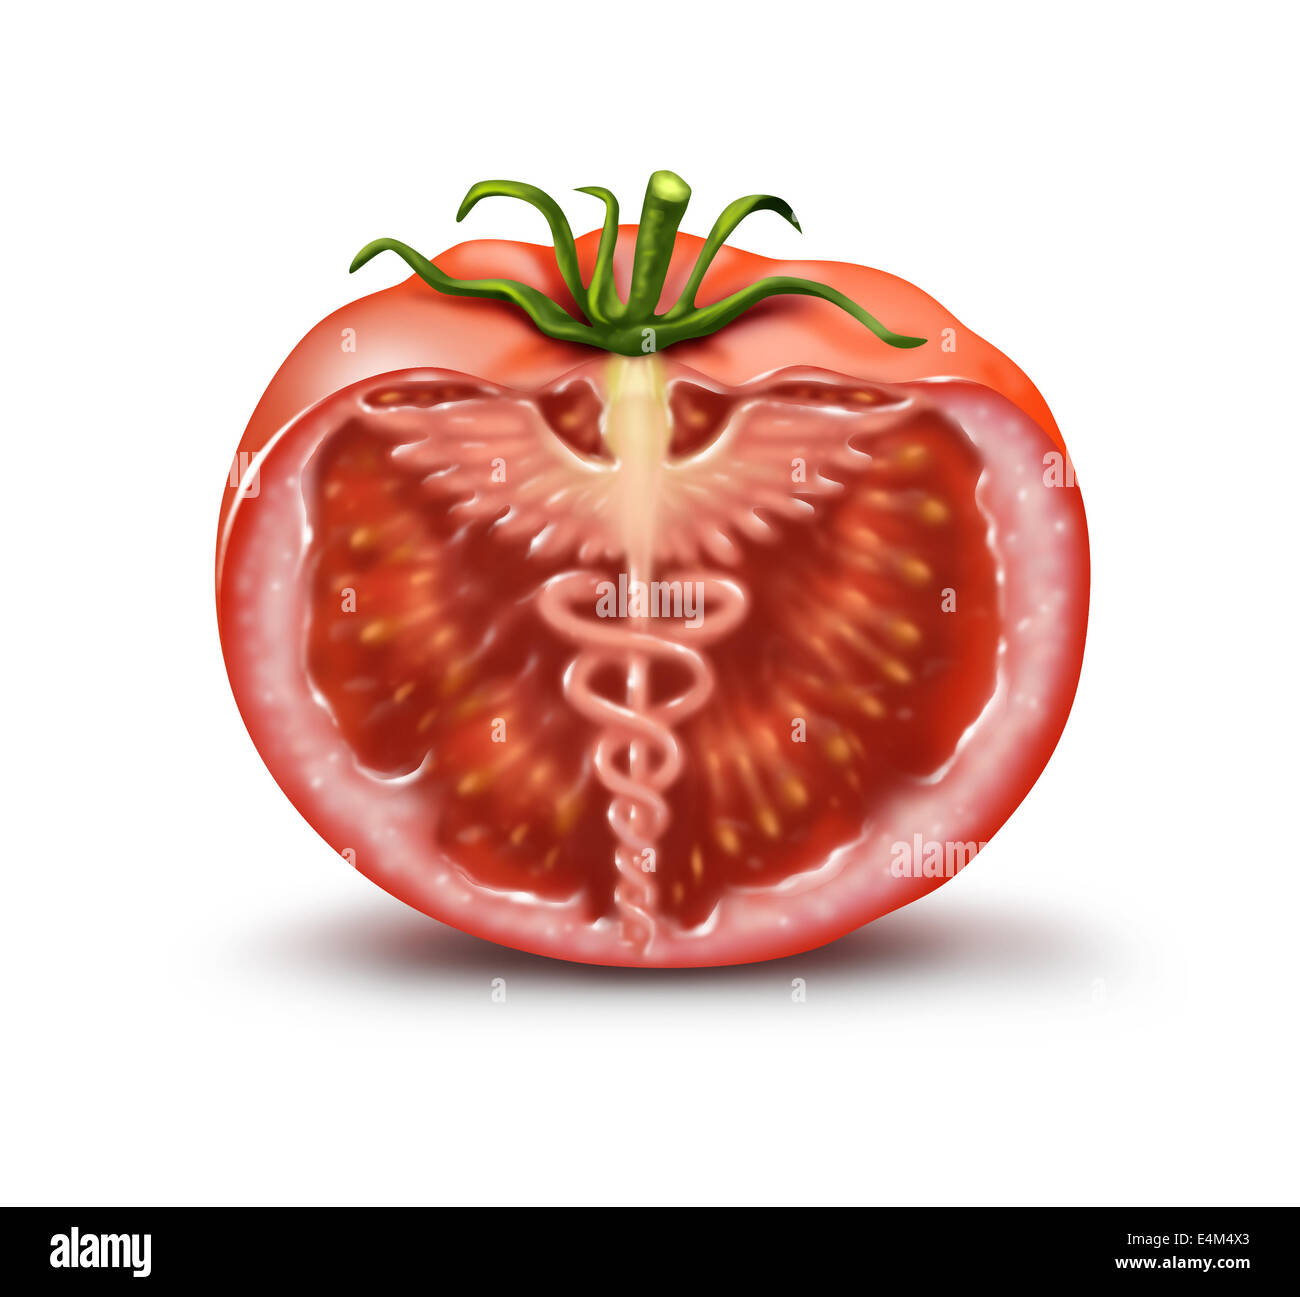 Gesunde Ernährung-Konzept als geschnittene Tomaten mit Hermesstab Symbol und Symbol für die Medizin in der Frucht als Metapher für die Vorteile Stockfoto